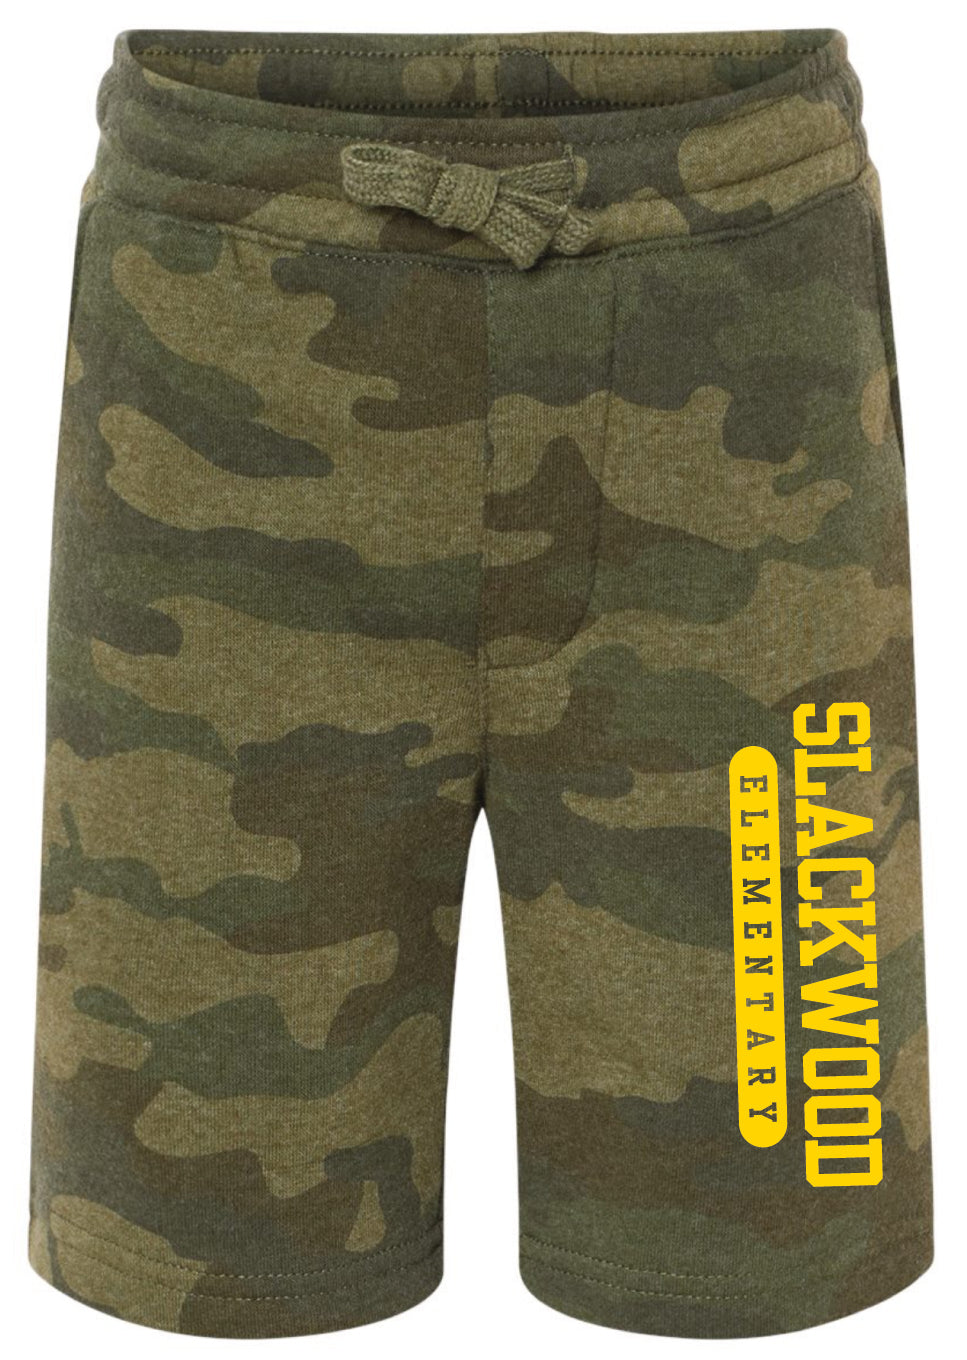 Slackwood Camo Cotton Blend Shorts- Youth and Adult Unisex